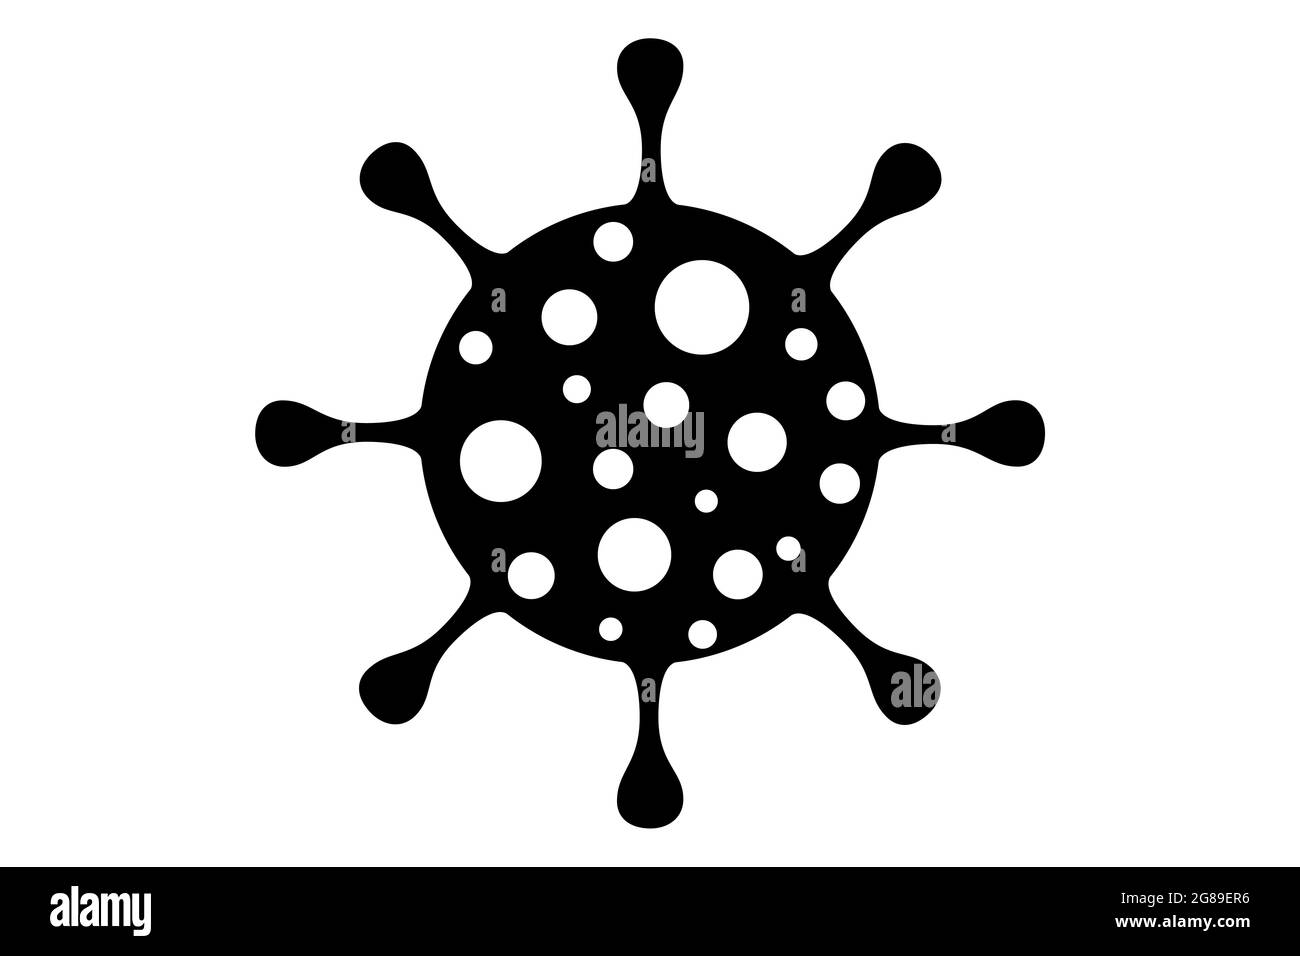 Coronavirus 2019-nCoV. Diseño de iconos del virus Corona. Negro sobre fondo blanco aislado. Infección por enfermedades respiratorias (brote de enfermedad). Pandemia de gripe. Foto de stock